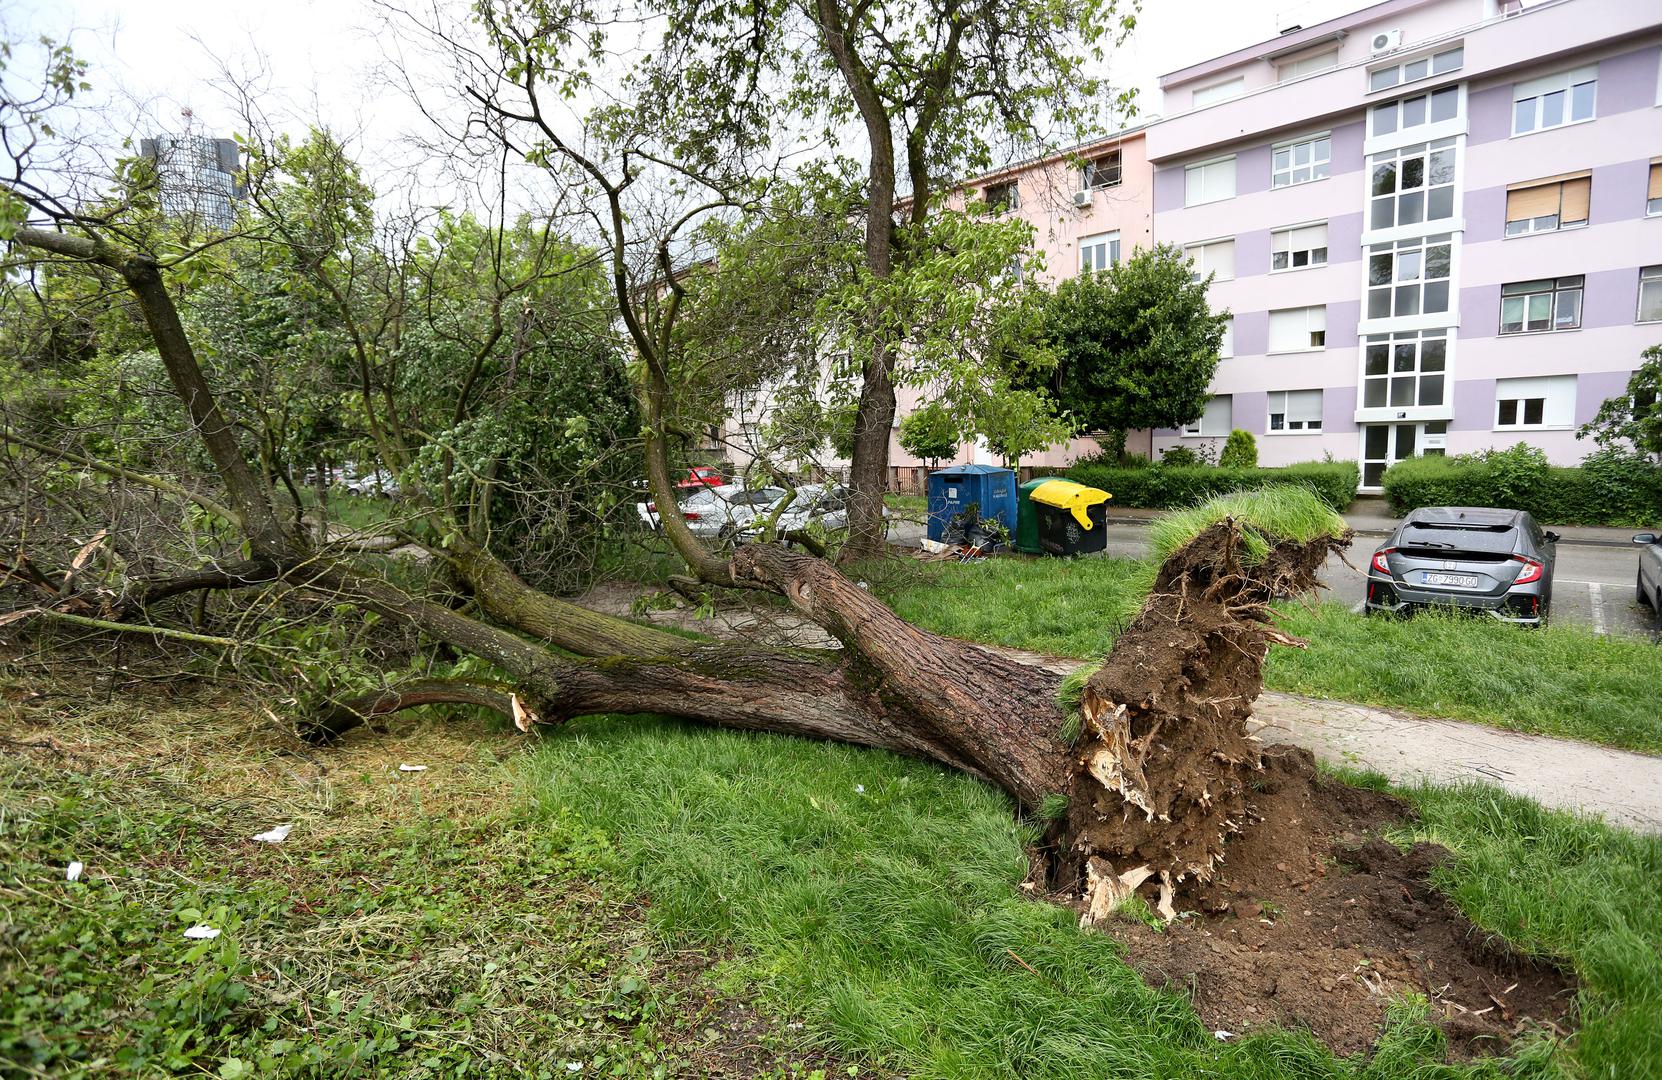 Snažan i olujan vjetar pogodio je Zagreb, a na ulicama se nalazi mnogo polomljenih grana stabala, razbacanih kanti za smeće, pa čak i štandova. Ponegdje su oštećeni semafori, intervencijske službe i vatrogasci su na terenu, a policija upozorava građane da ne izlaze ako ne moraju. 